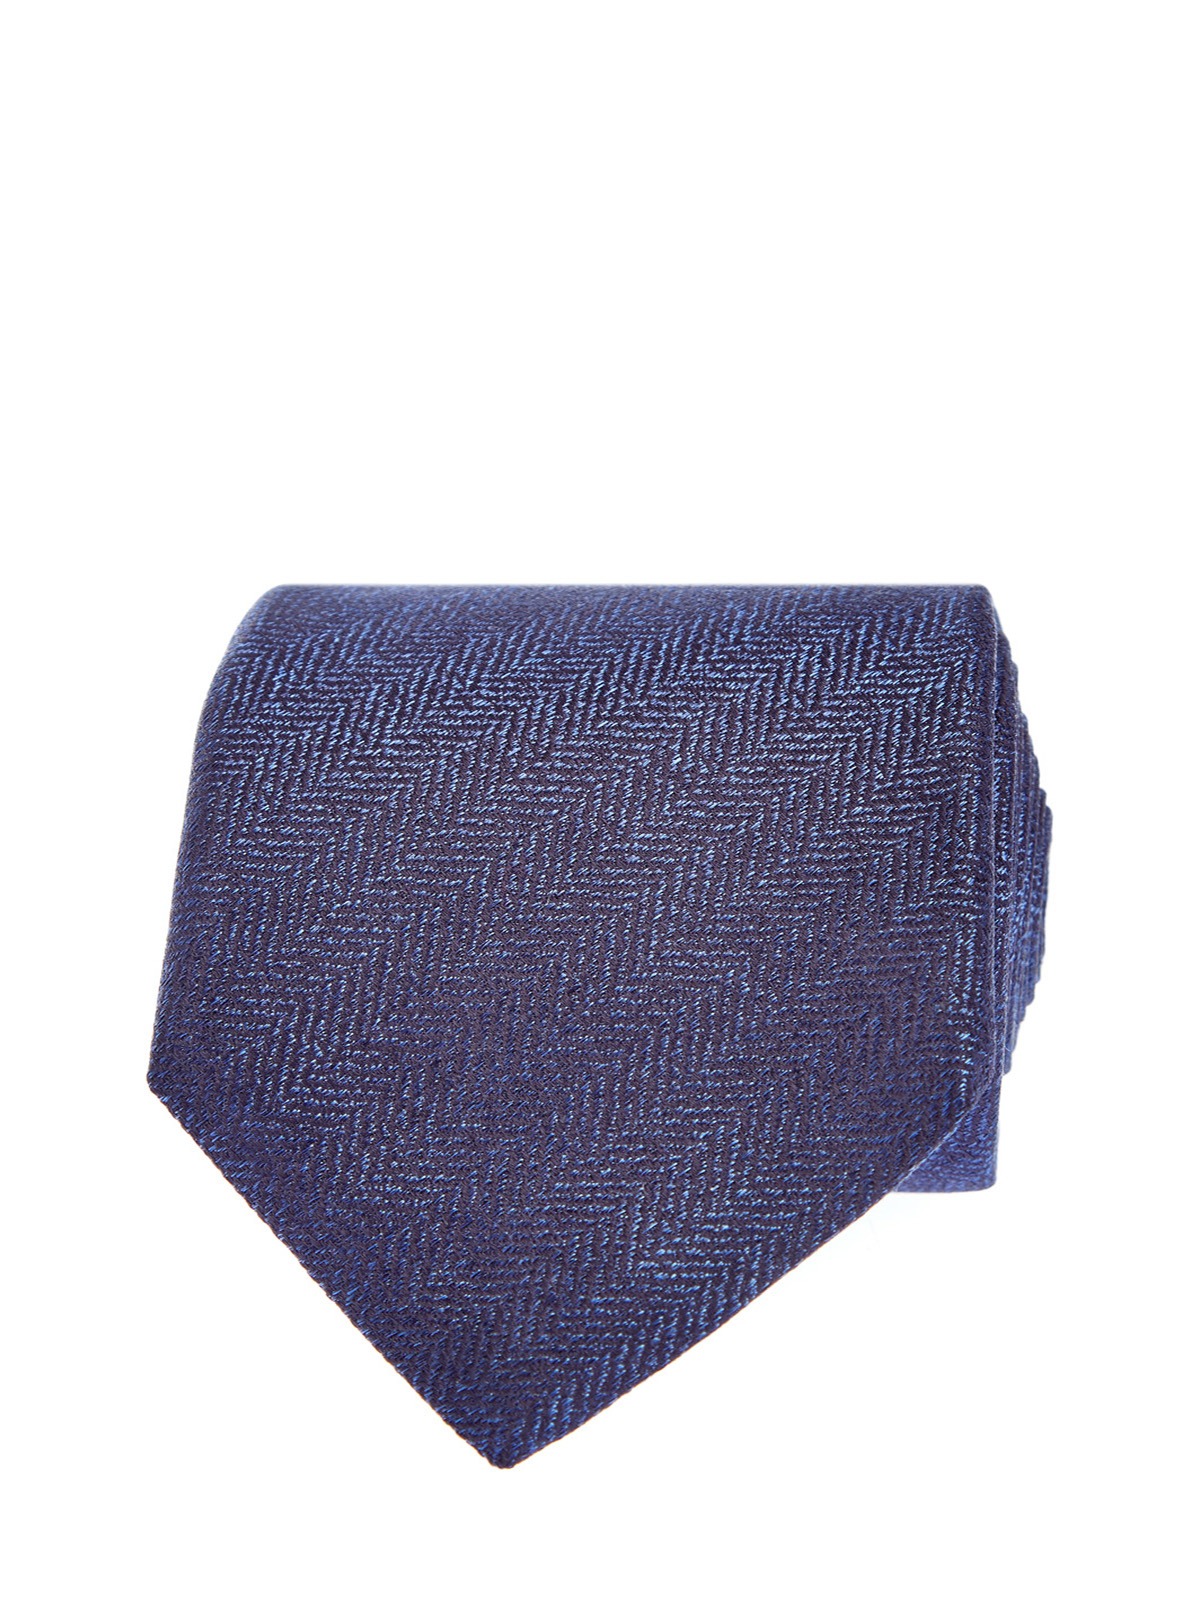 Шелковый галстук в синих тонах CANALI, цвет синий, размер 41;41.5;42;42.5;43;43.5;44 - фото 1